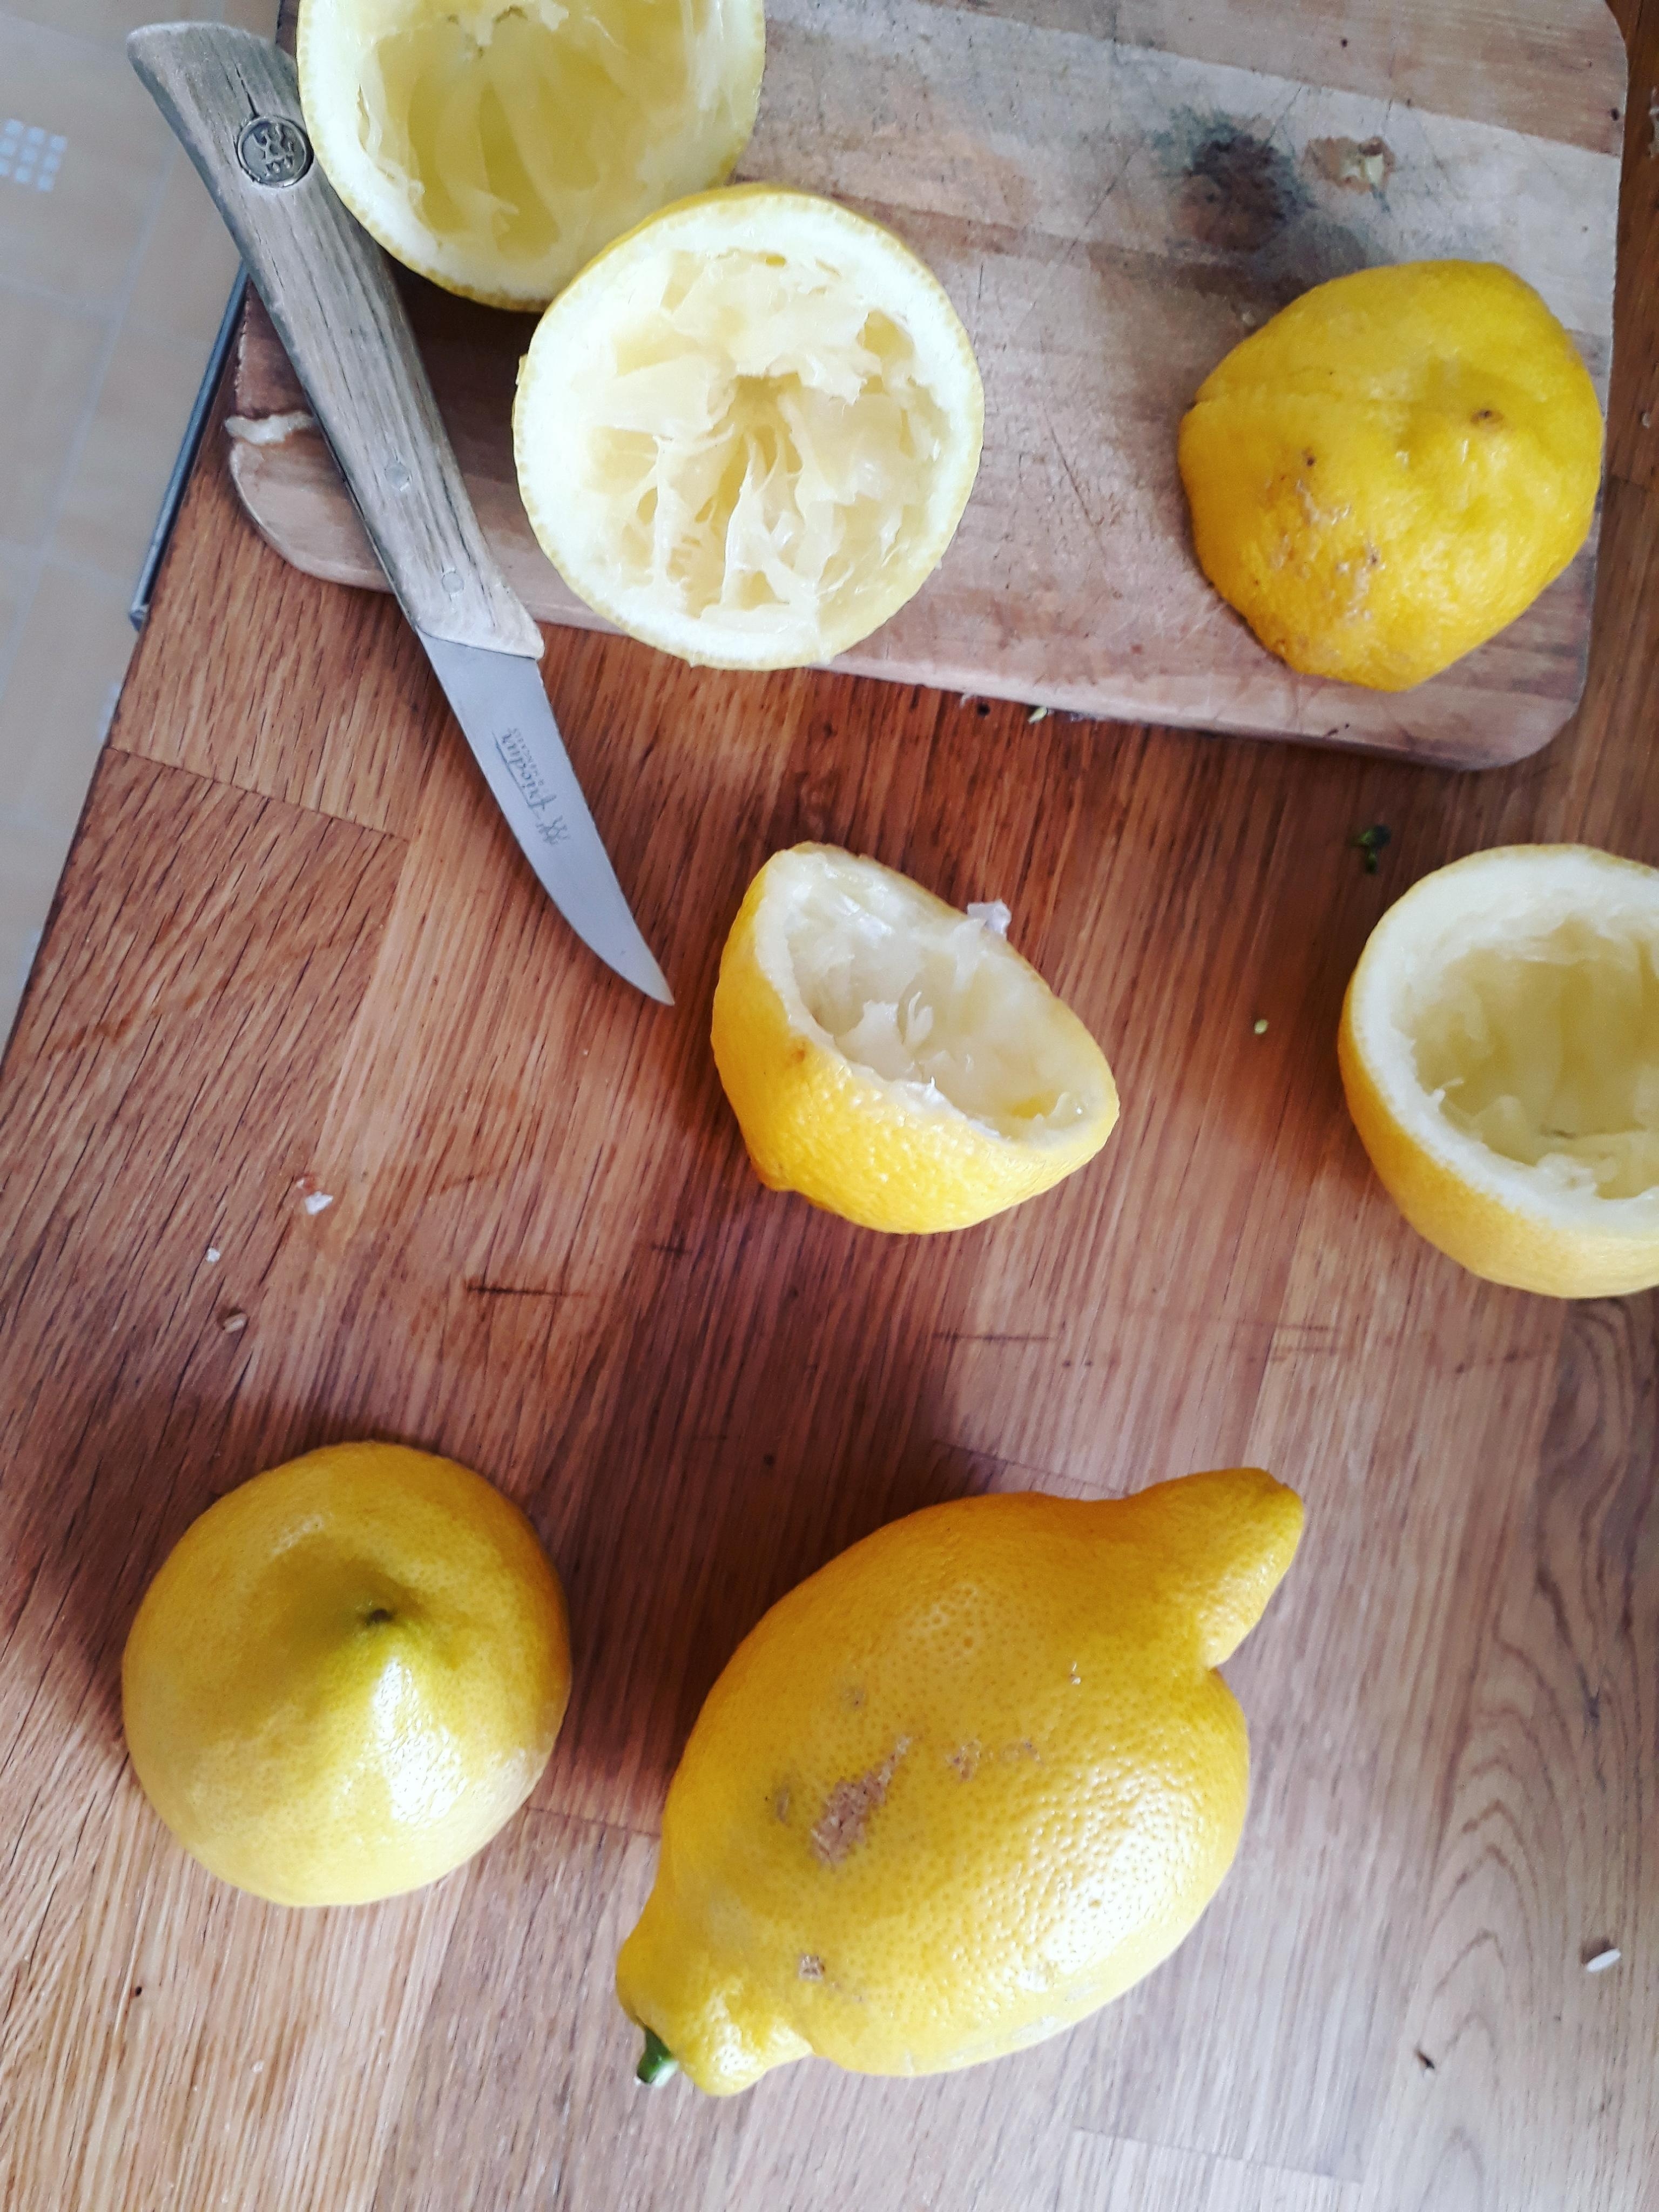 Lemon vibes! Für selbstgemachte Limonade / infused water einfach wunderbar ♡ #yellow #summer #küche